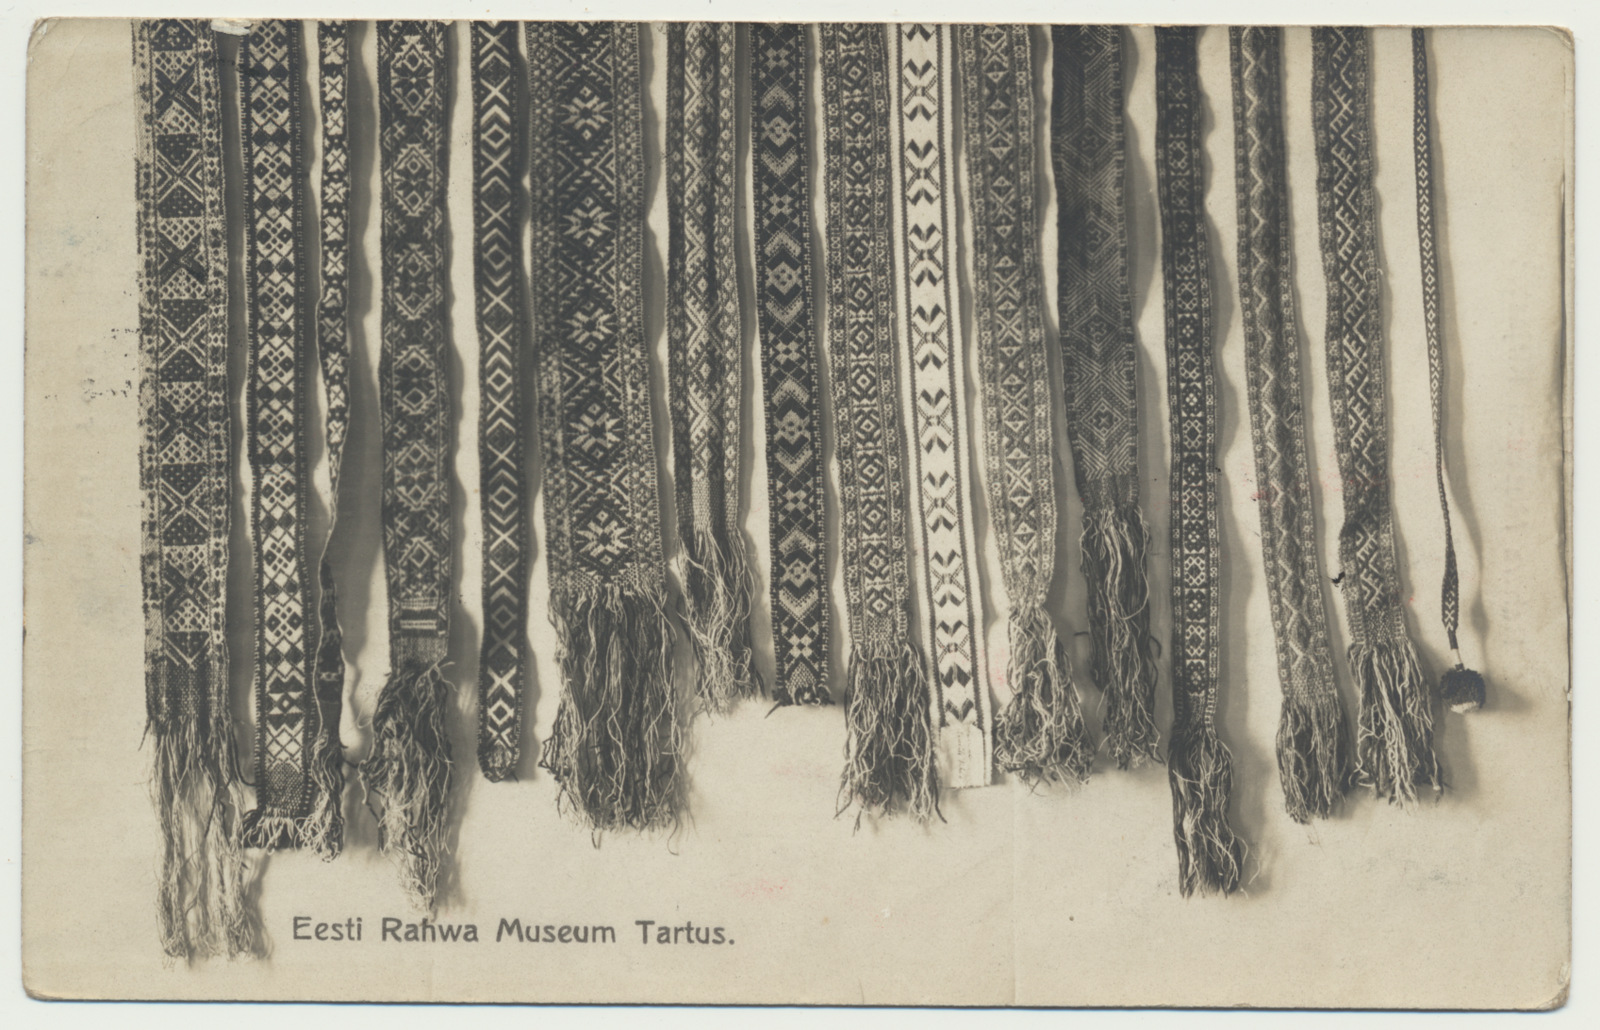 foto, Tartu, Eesti Rahva Muuseum, vöö näidised, 1911, foto J. Kristin